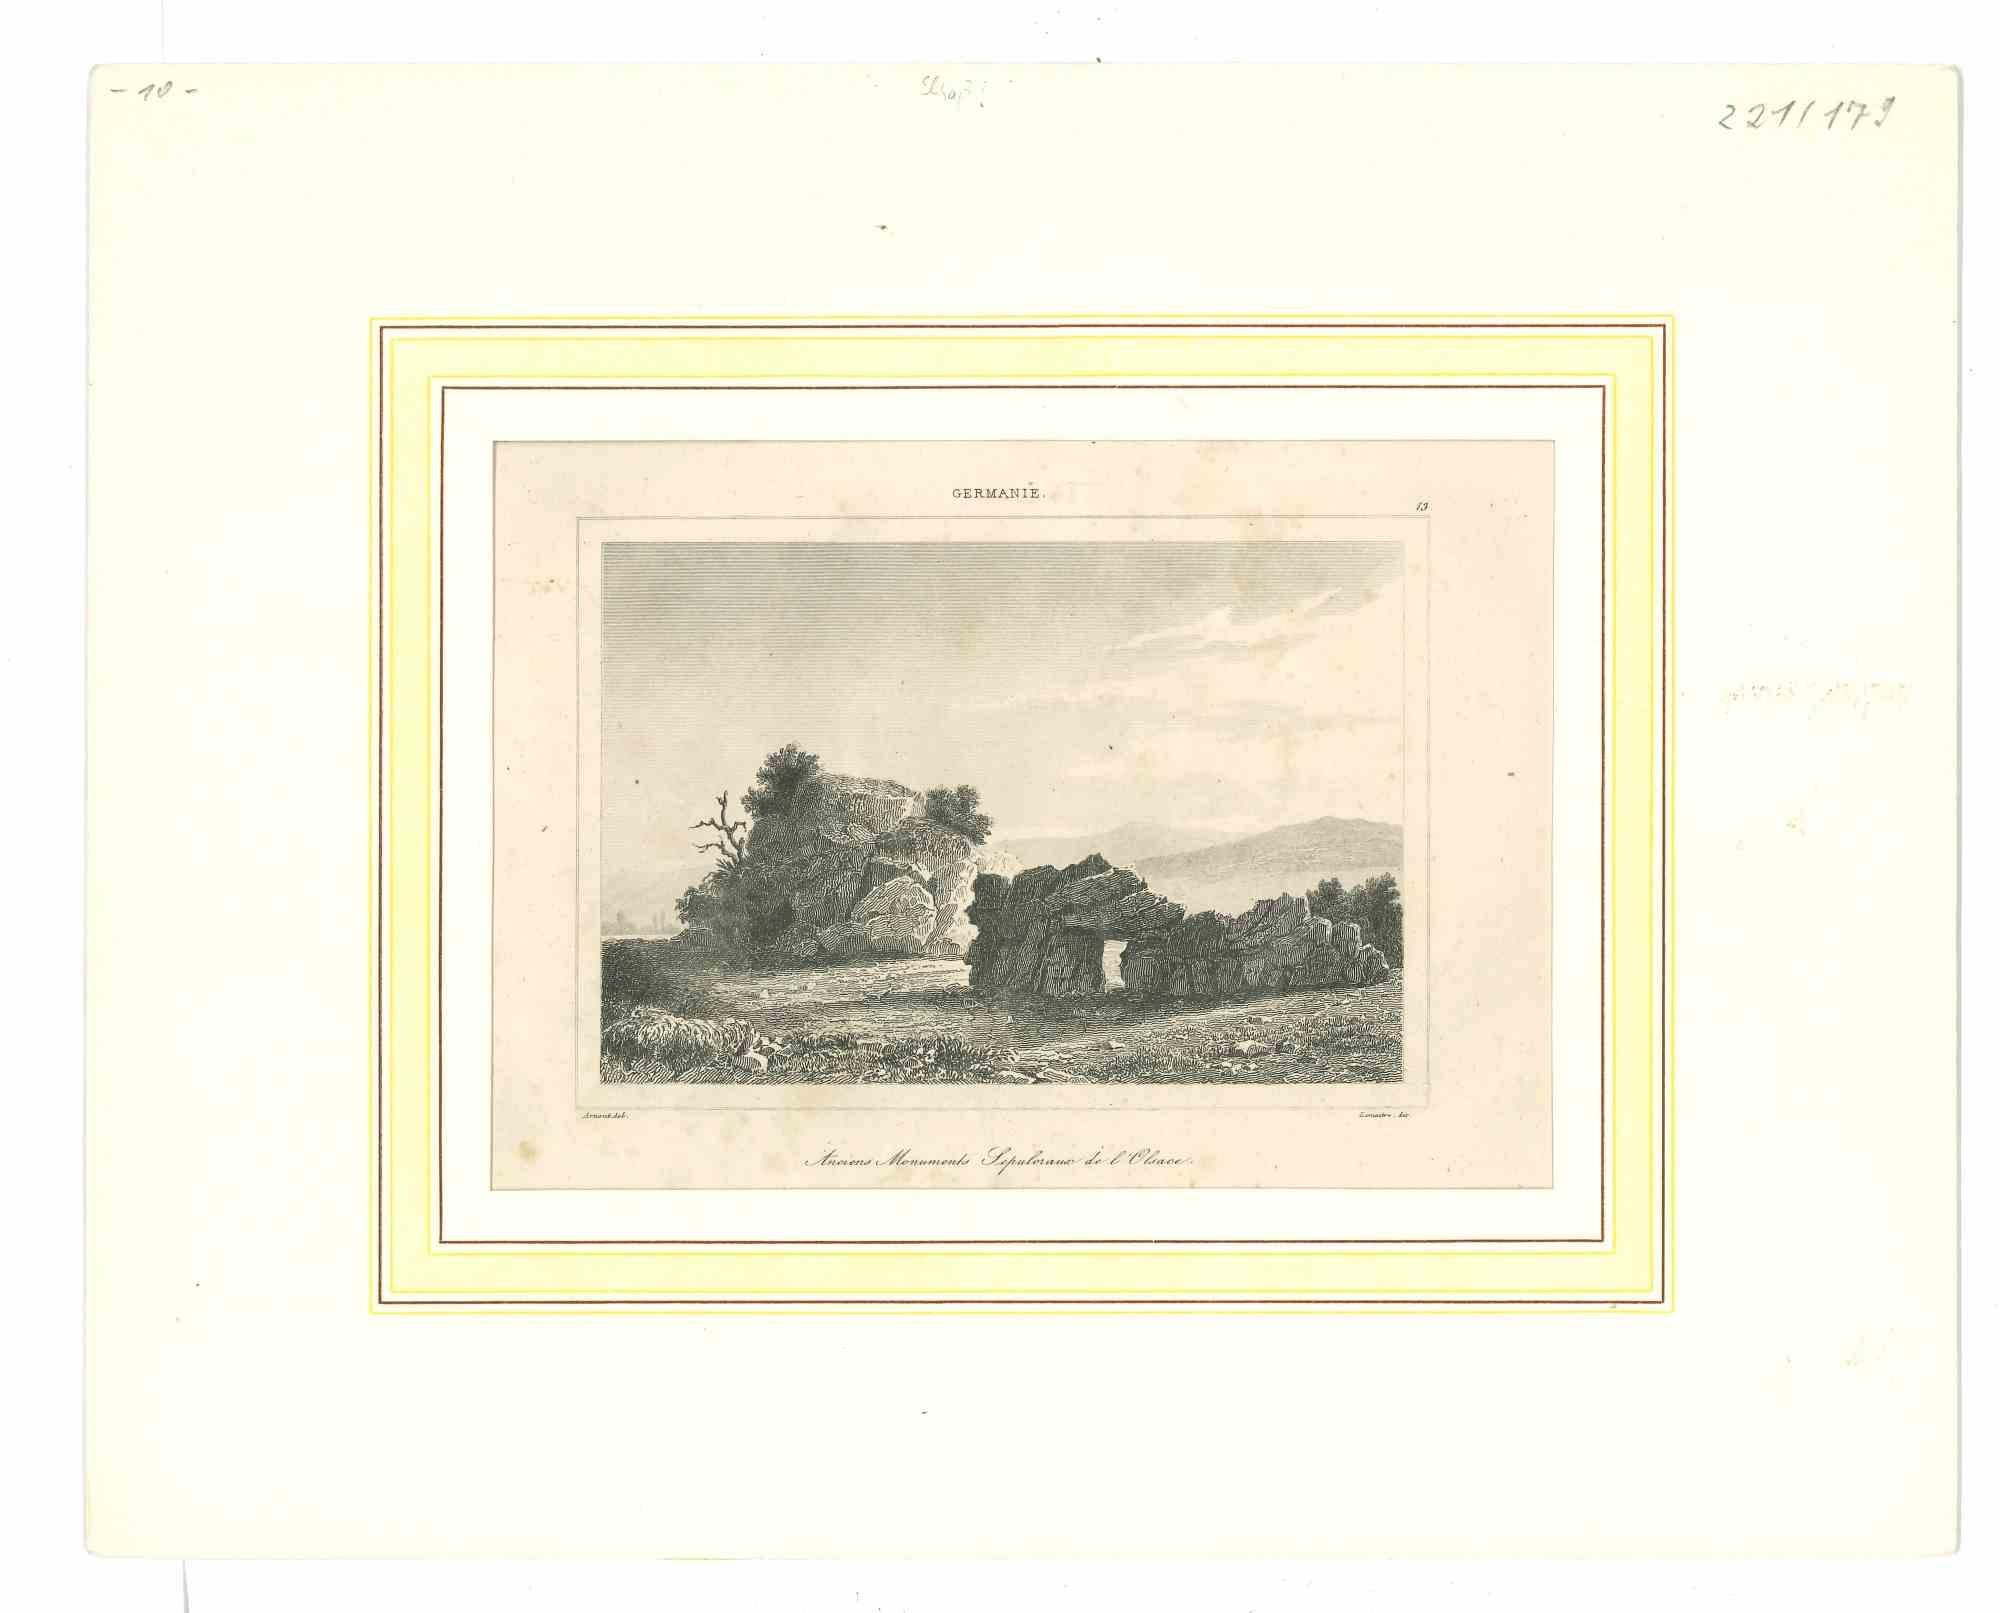 Unknown Landscape Print - Anciens Monuments Sepuloraua de l'Alsace - Original Lithograph - Mid-19th Cent